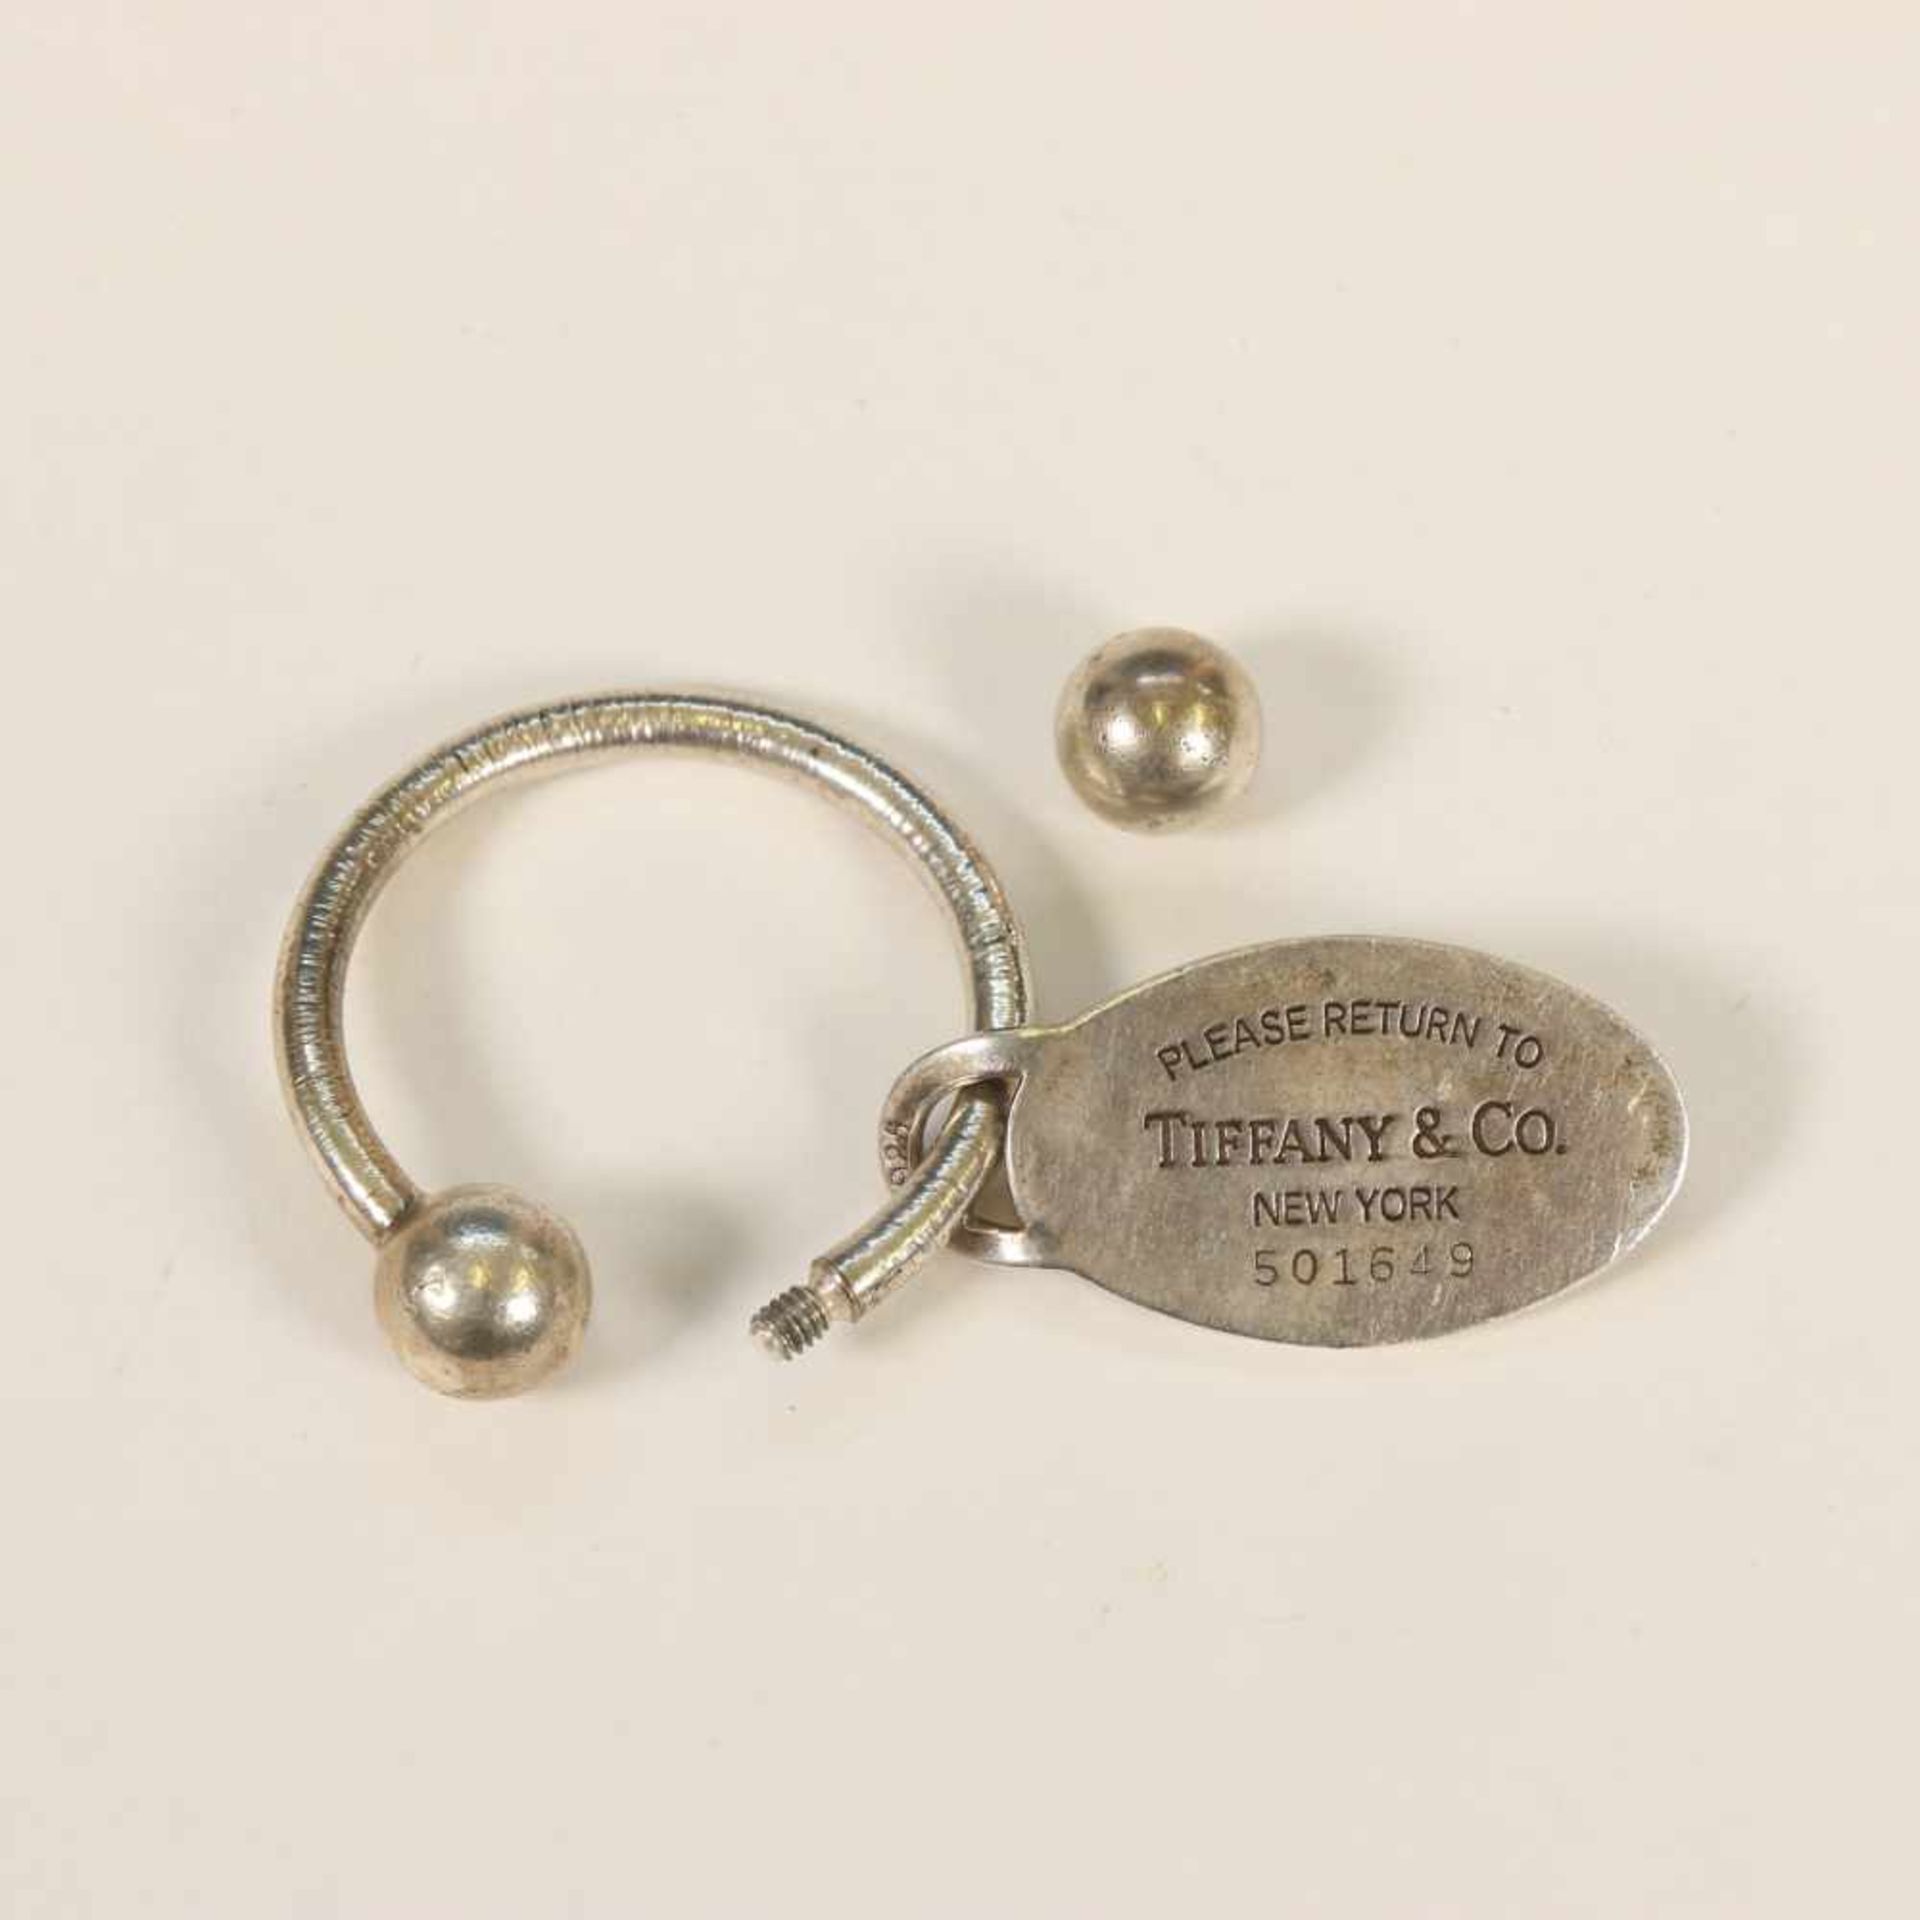 Verenigde staten, Tiffany New York sleutelhanger,sleutelhanger hoefijzervormig met afdraaibare - Bild 3 aus 3